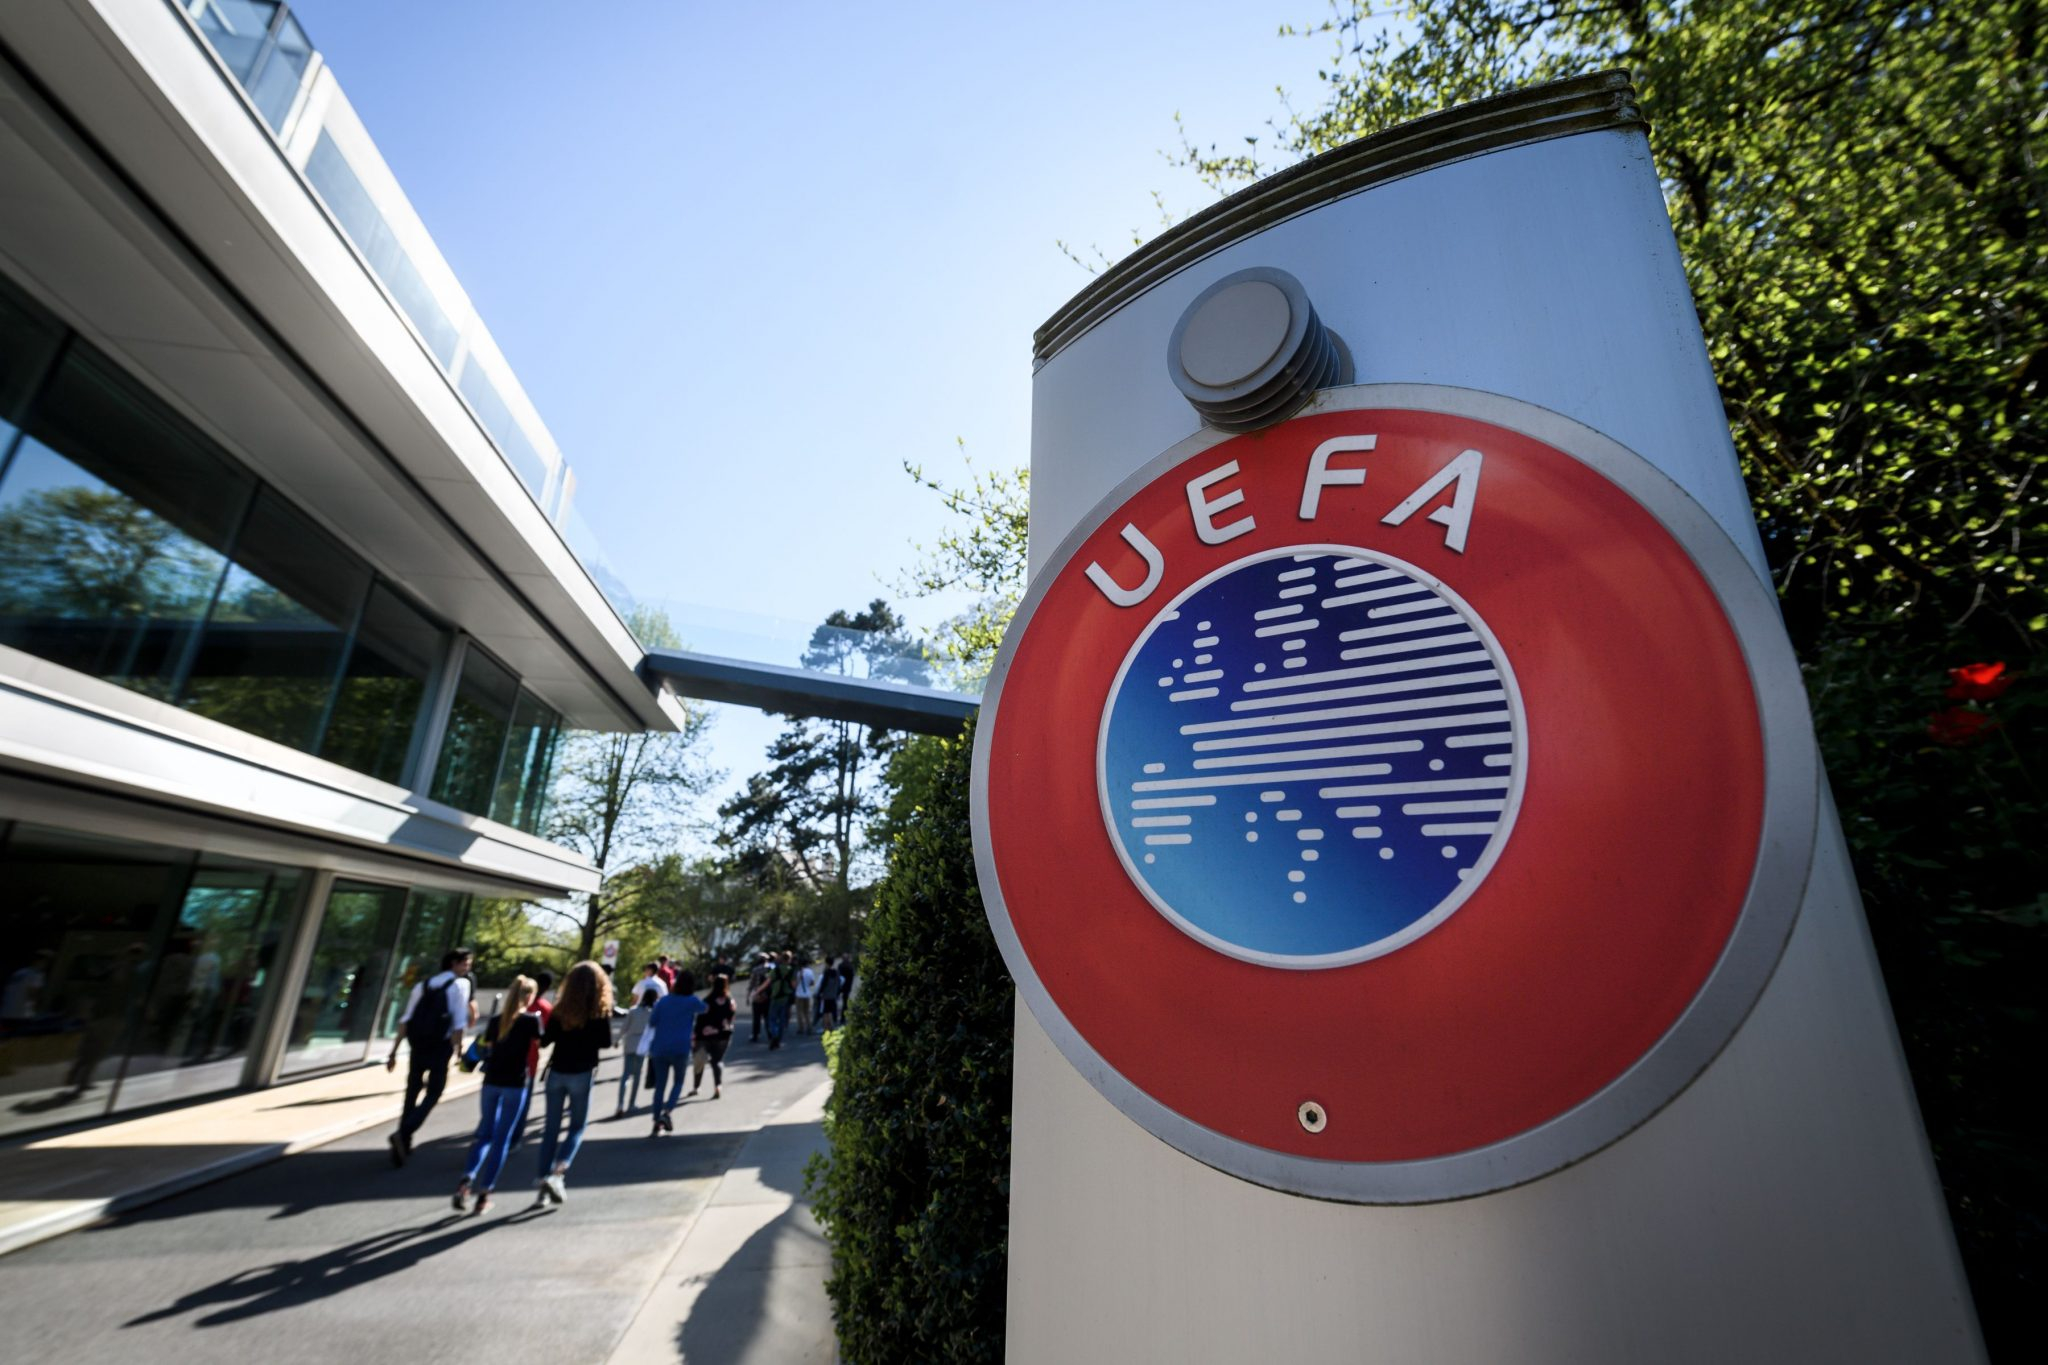 УЕФА может создать новый суперкубок